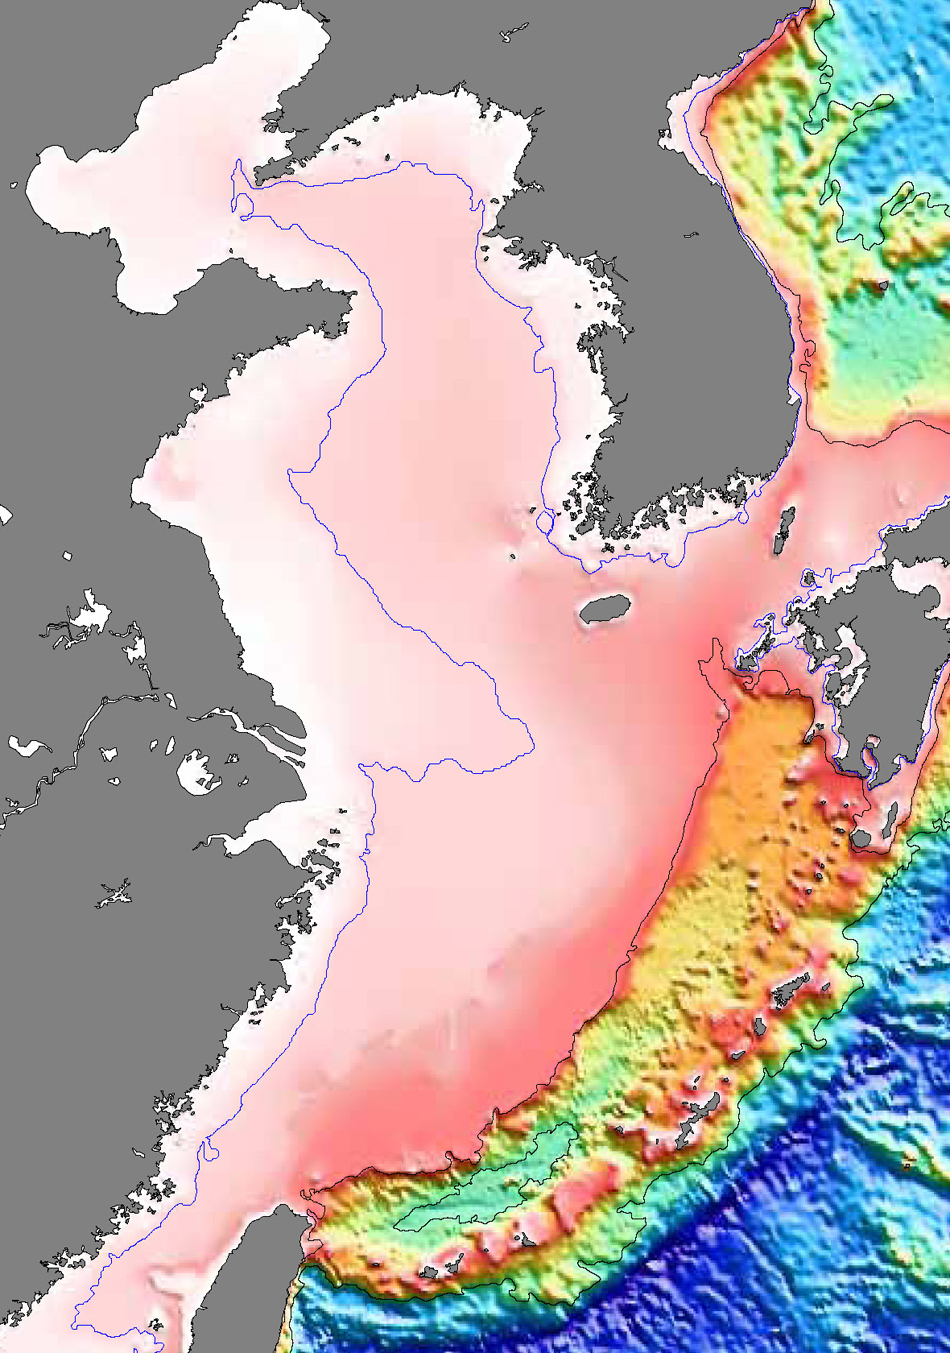 颜色从白色-红色-橙色-黄色-绿色-蓝色依次表示水深增加,我们黄海